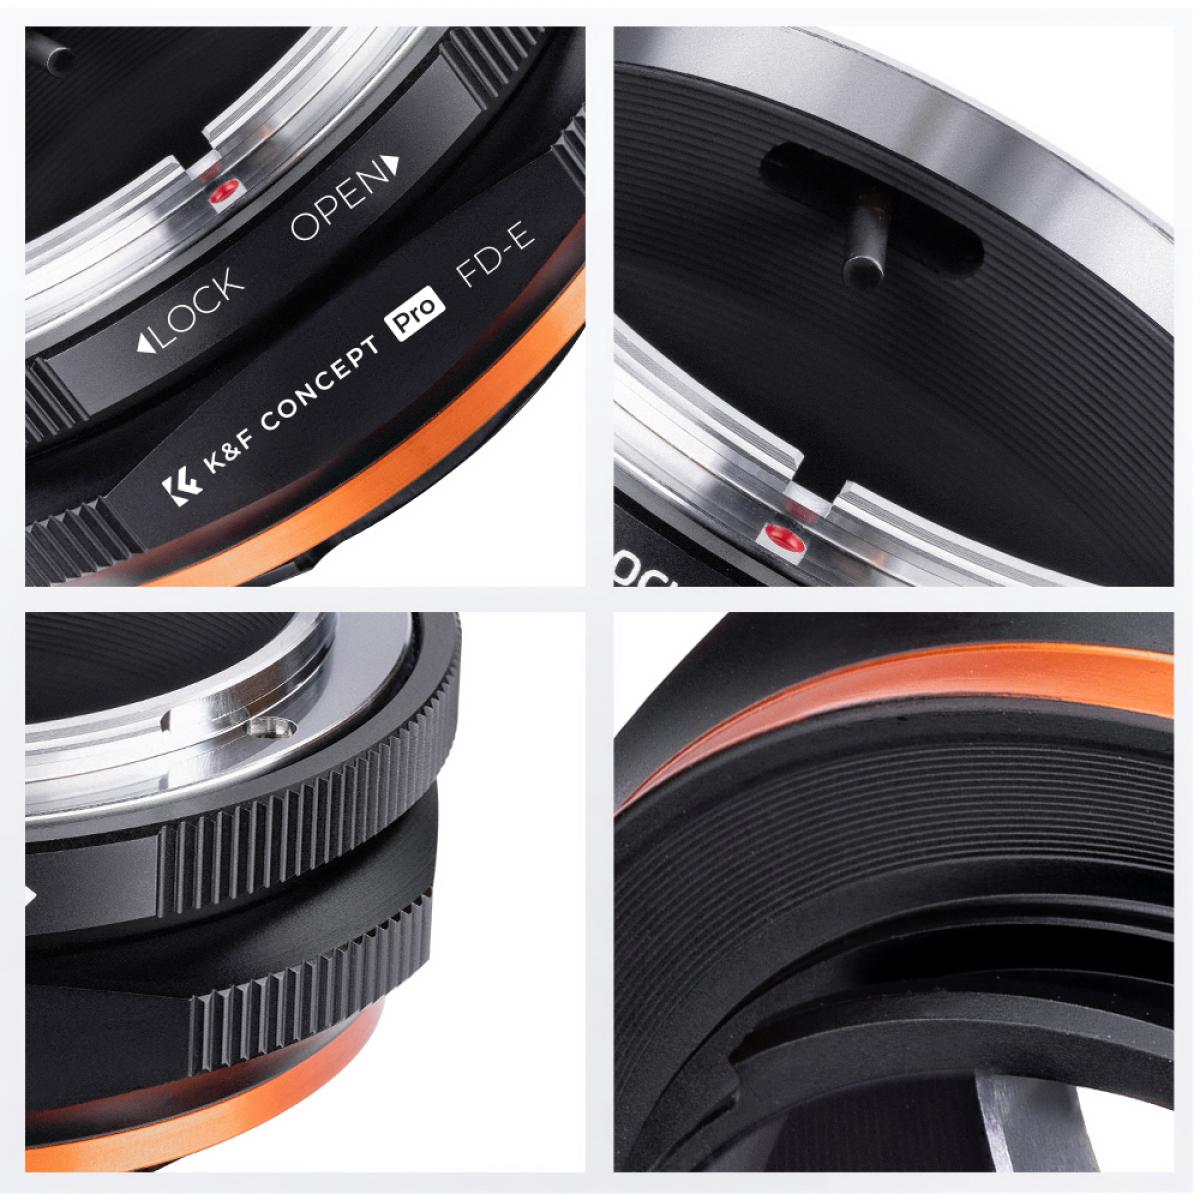 FD-NEX PRO Lens Adapter Handmatige Focus Compatibele Canon FD DSLR Lenzen voor Sony E Camera Lichaam